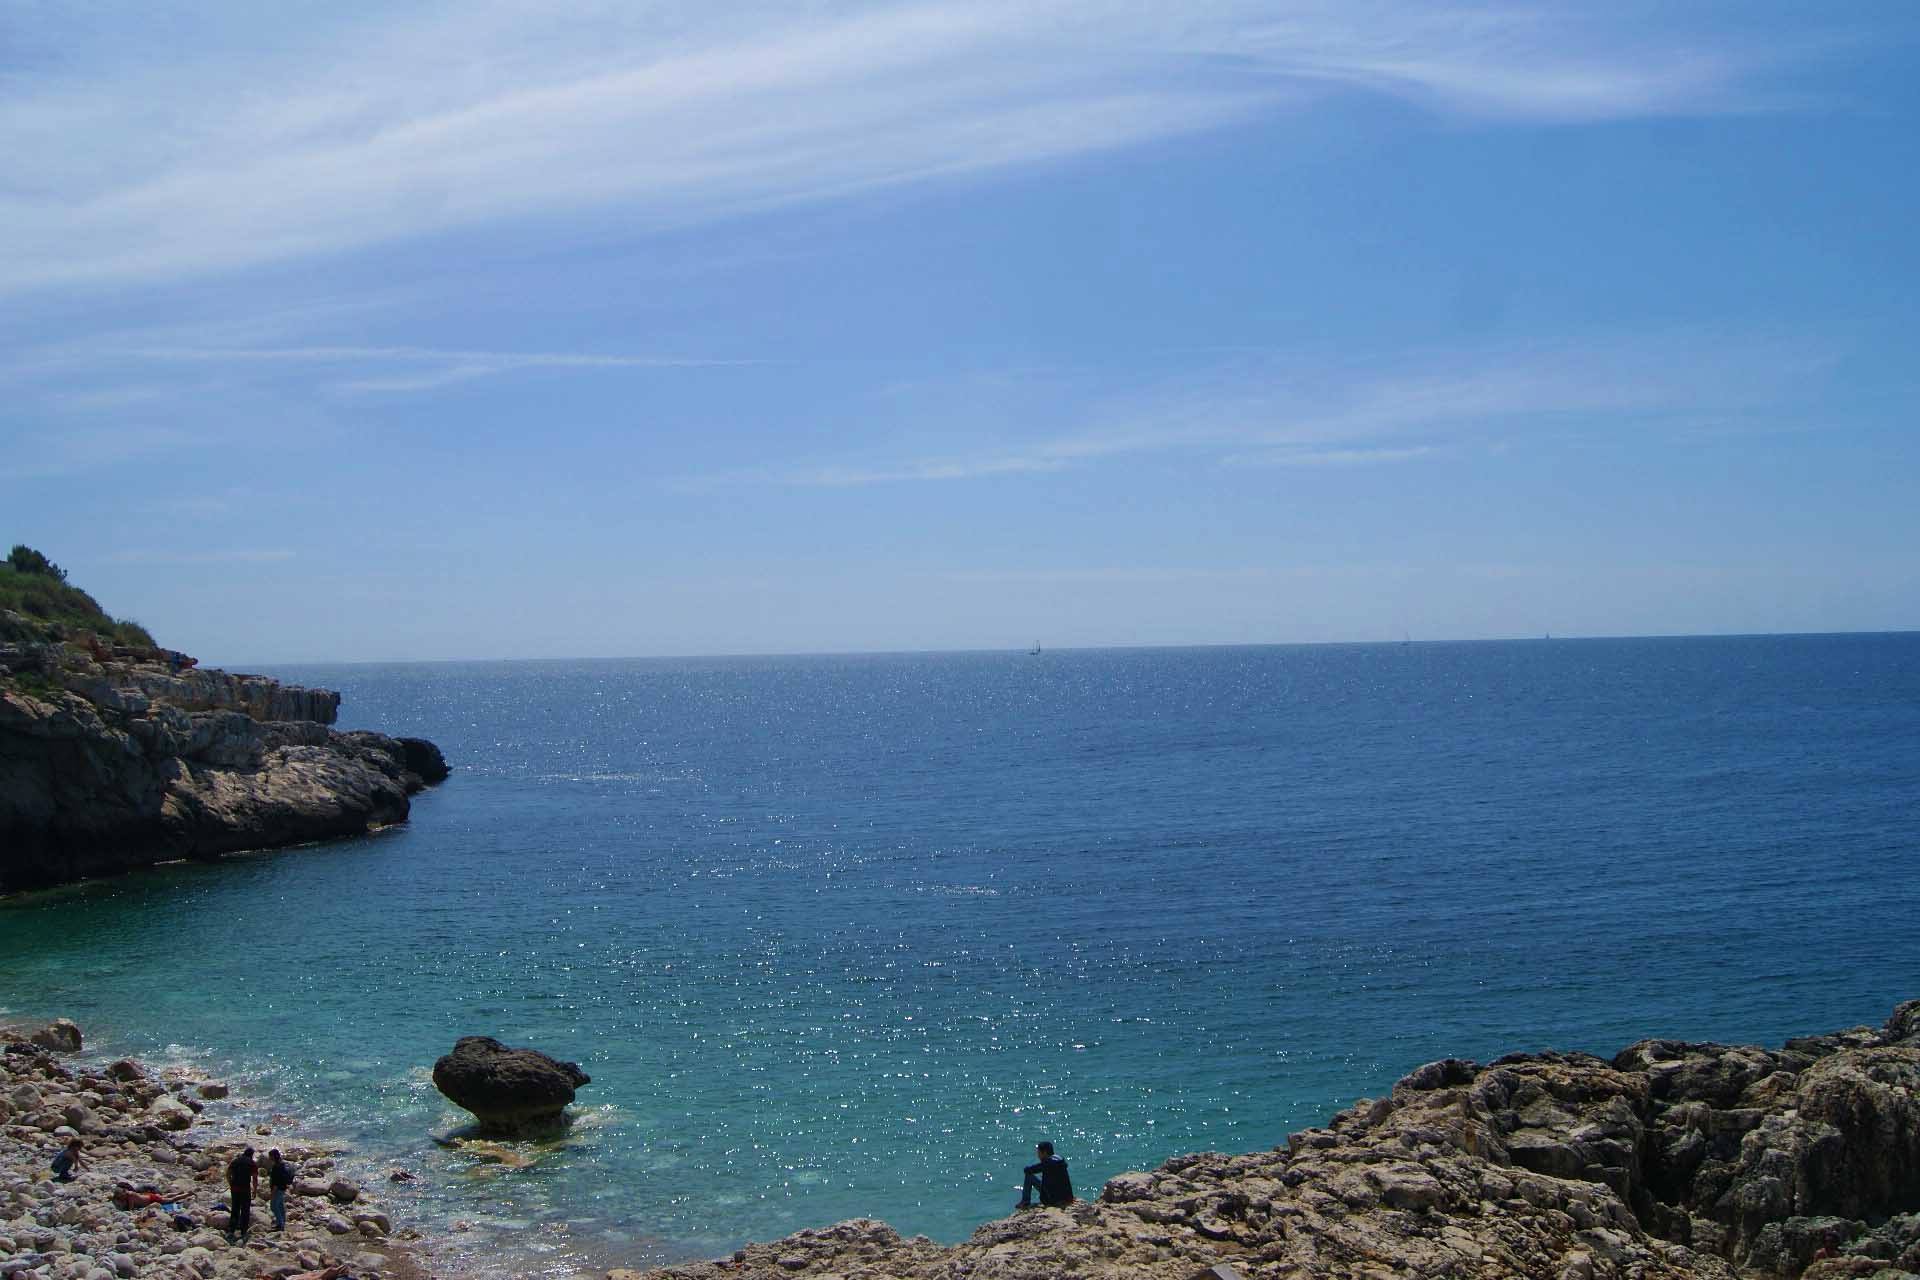 Beach in Palma de Mallorca